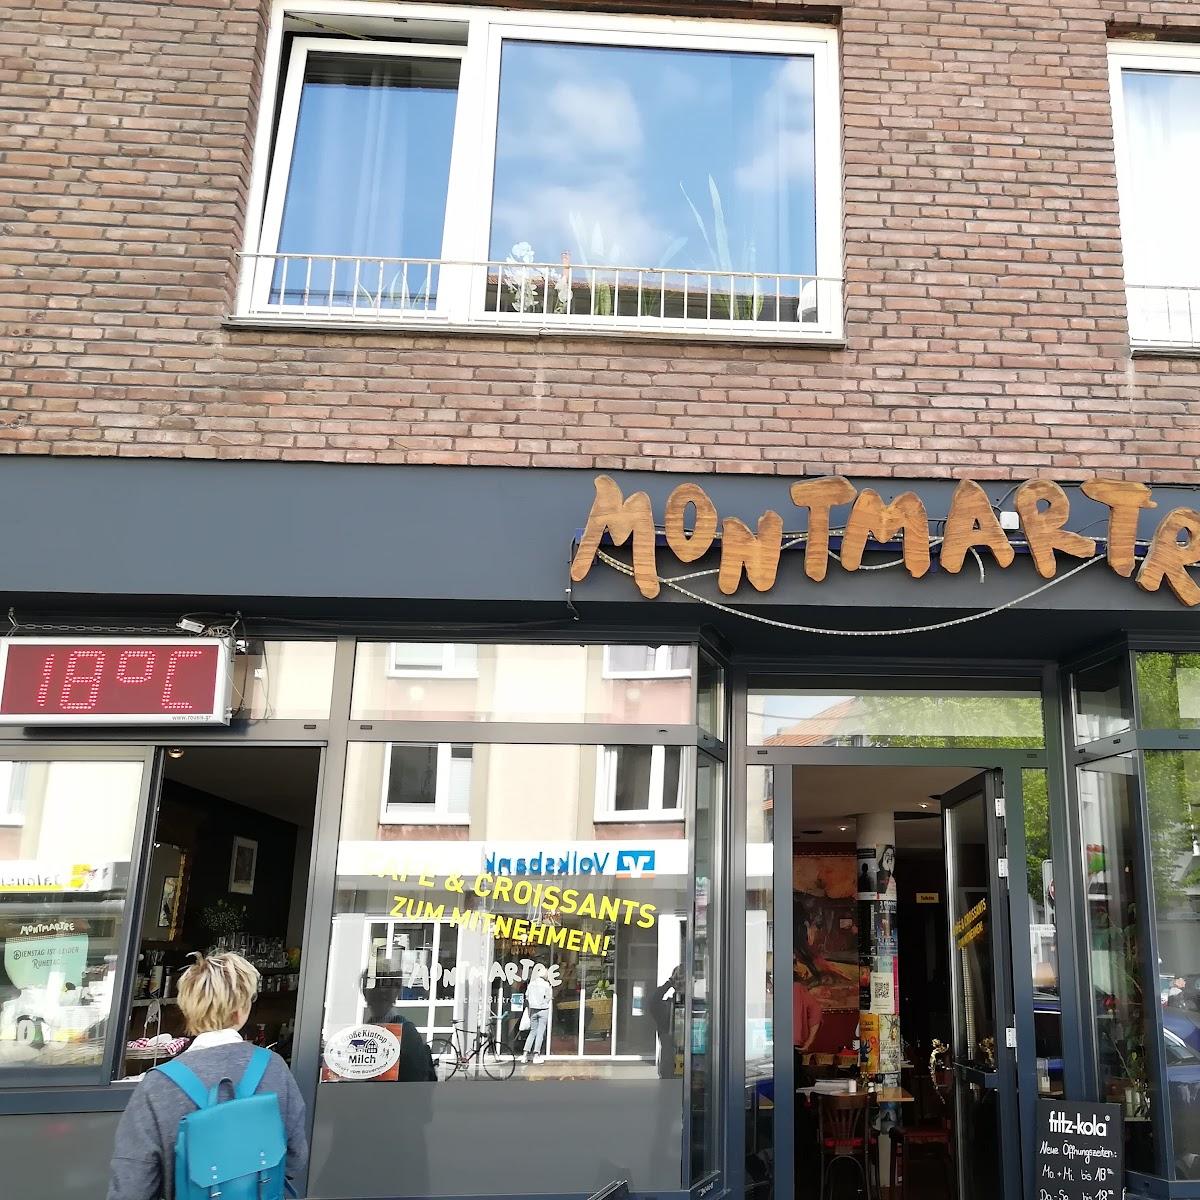 Restaurant "Montmartre" in Münster